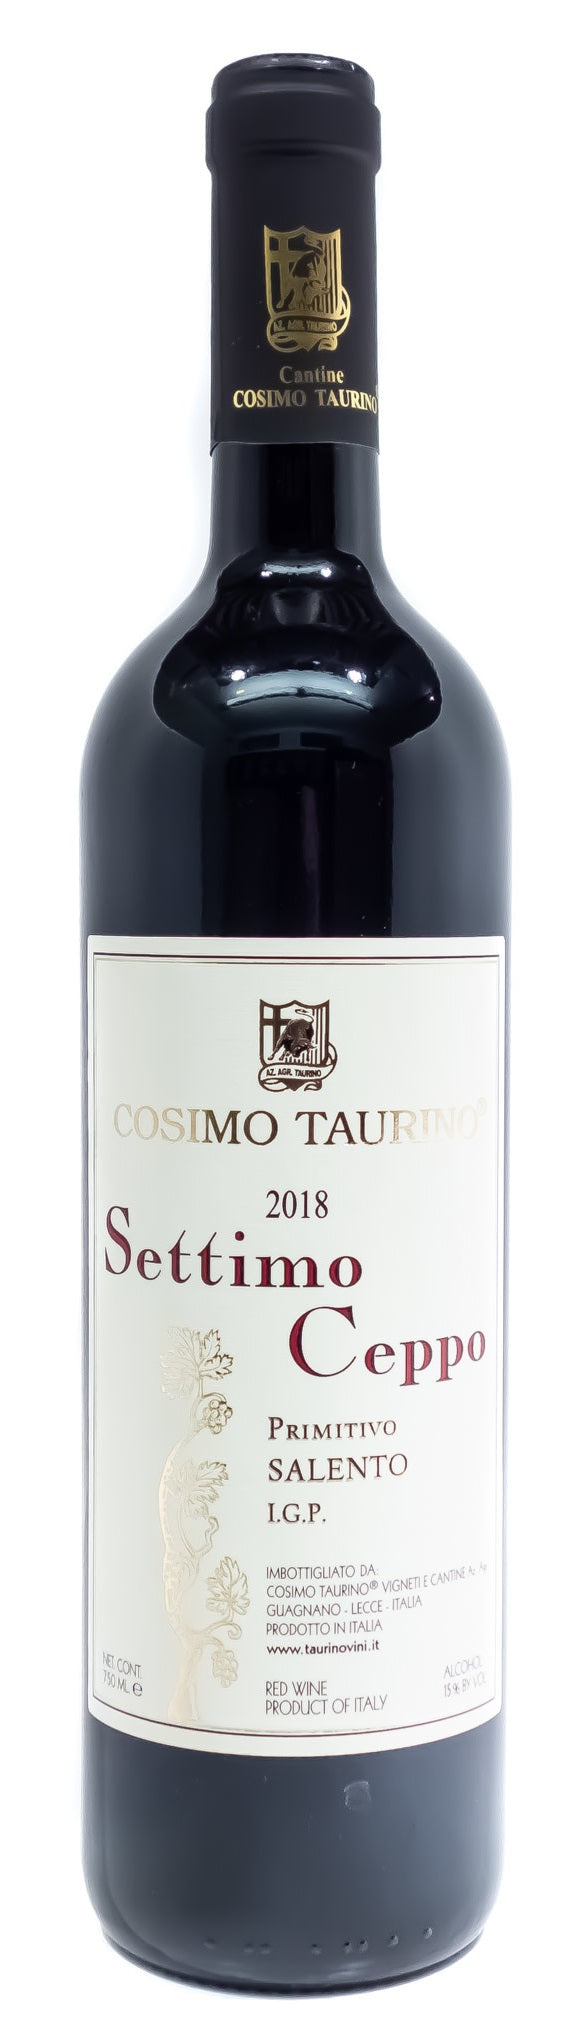 Primitivo 'Settimo Ceppo', Cosimo Taurino 2018